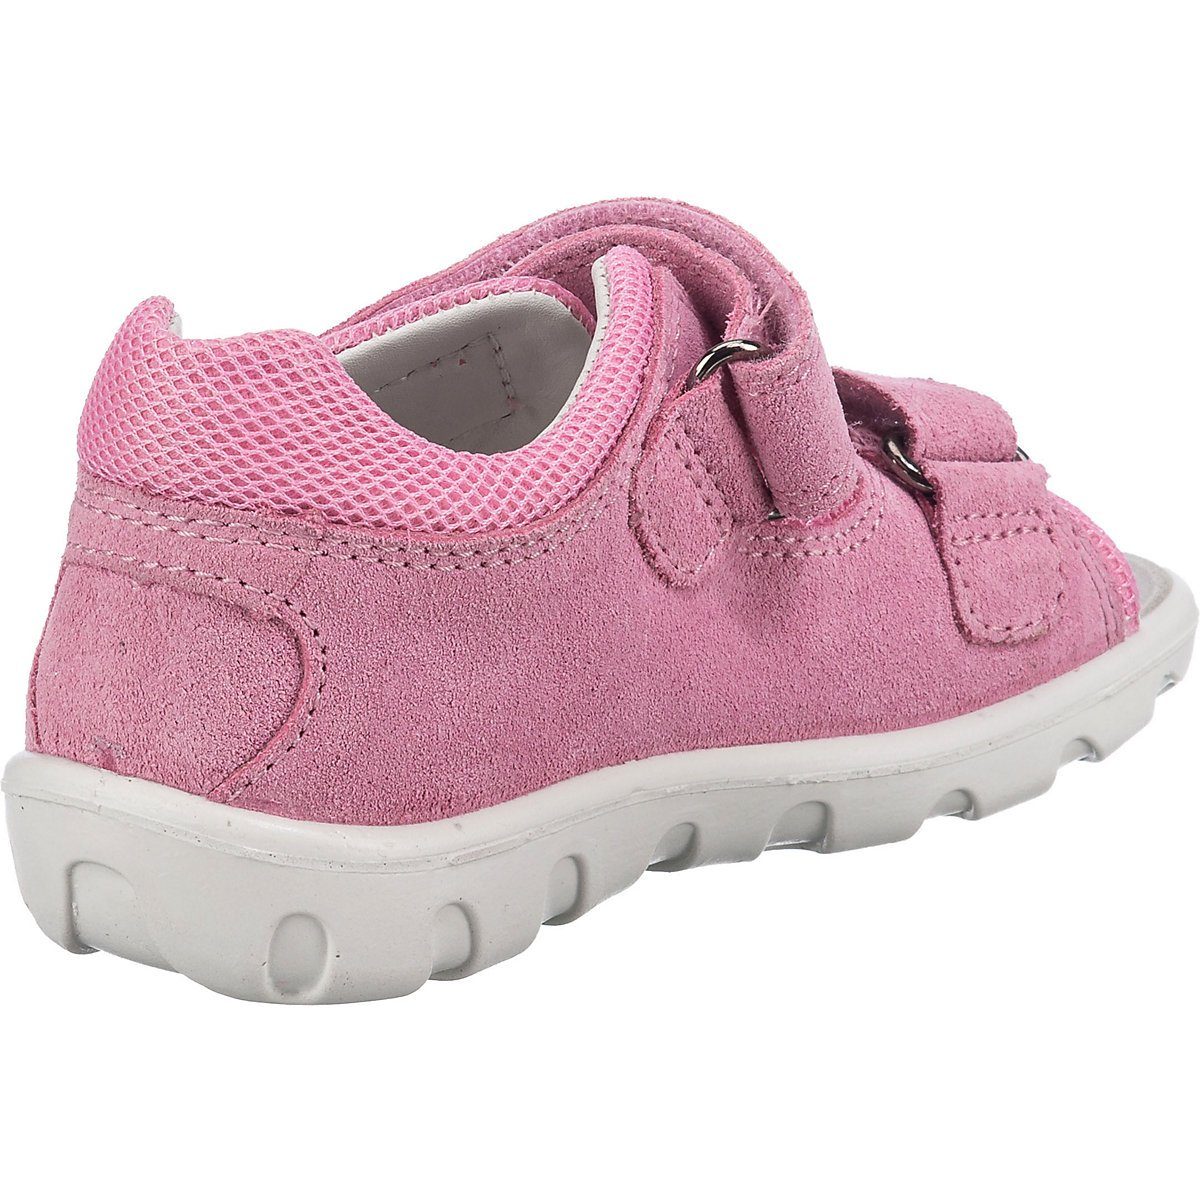 Schuhe Babyschuhe Mädchen ELEFANTEN Baby Sandalen PEPPI für Mädchen Sandale